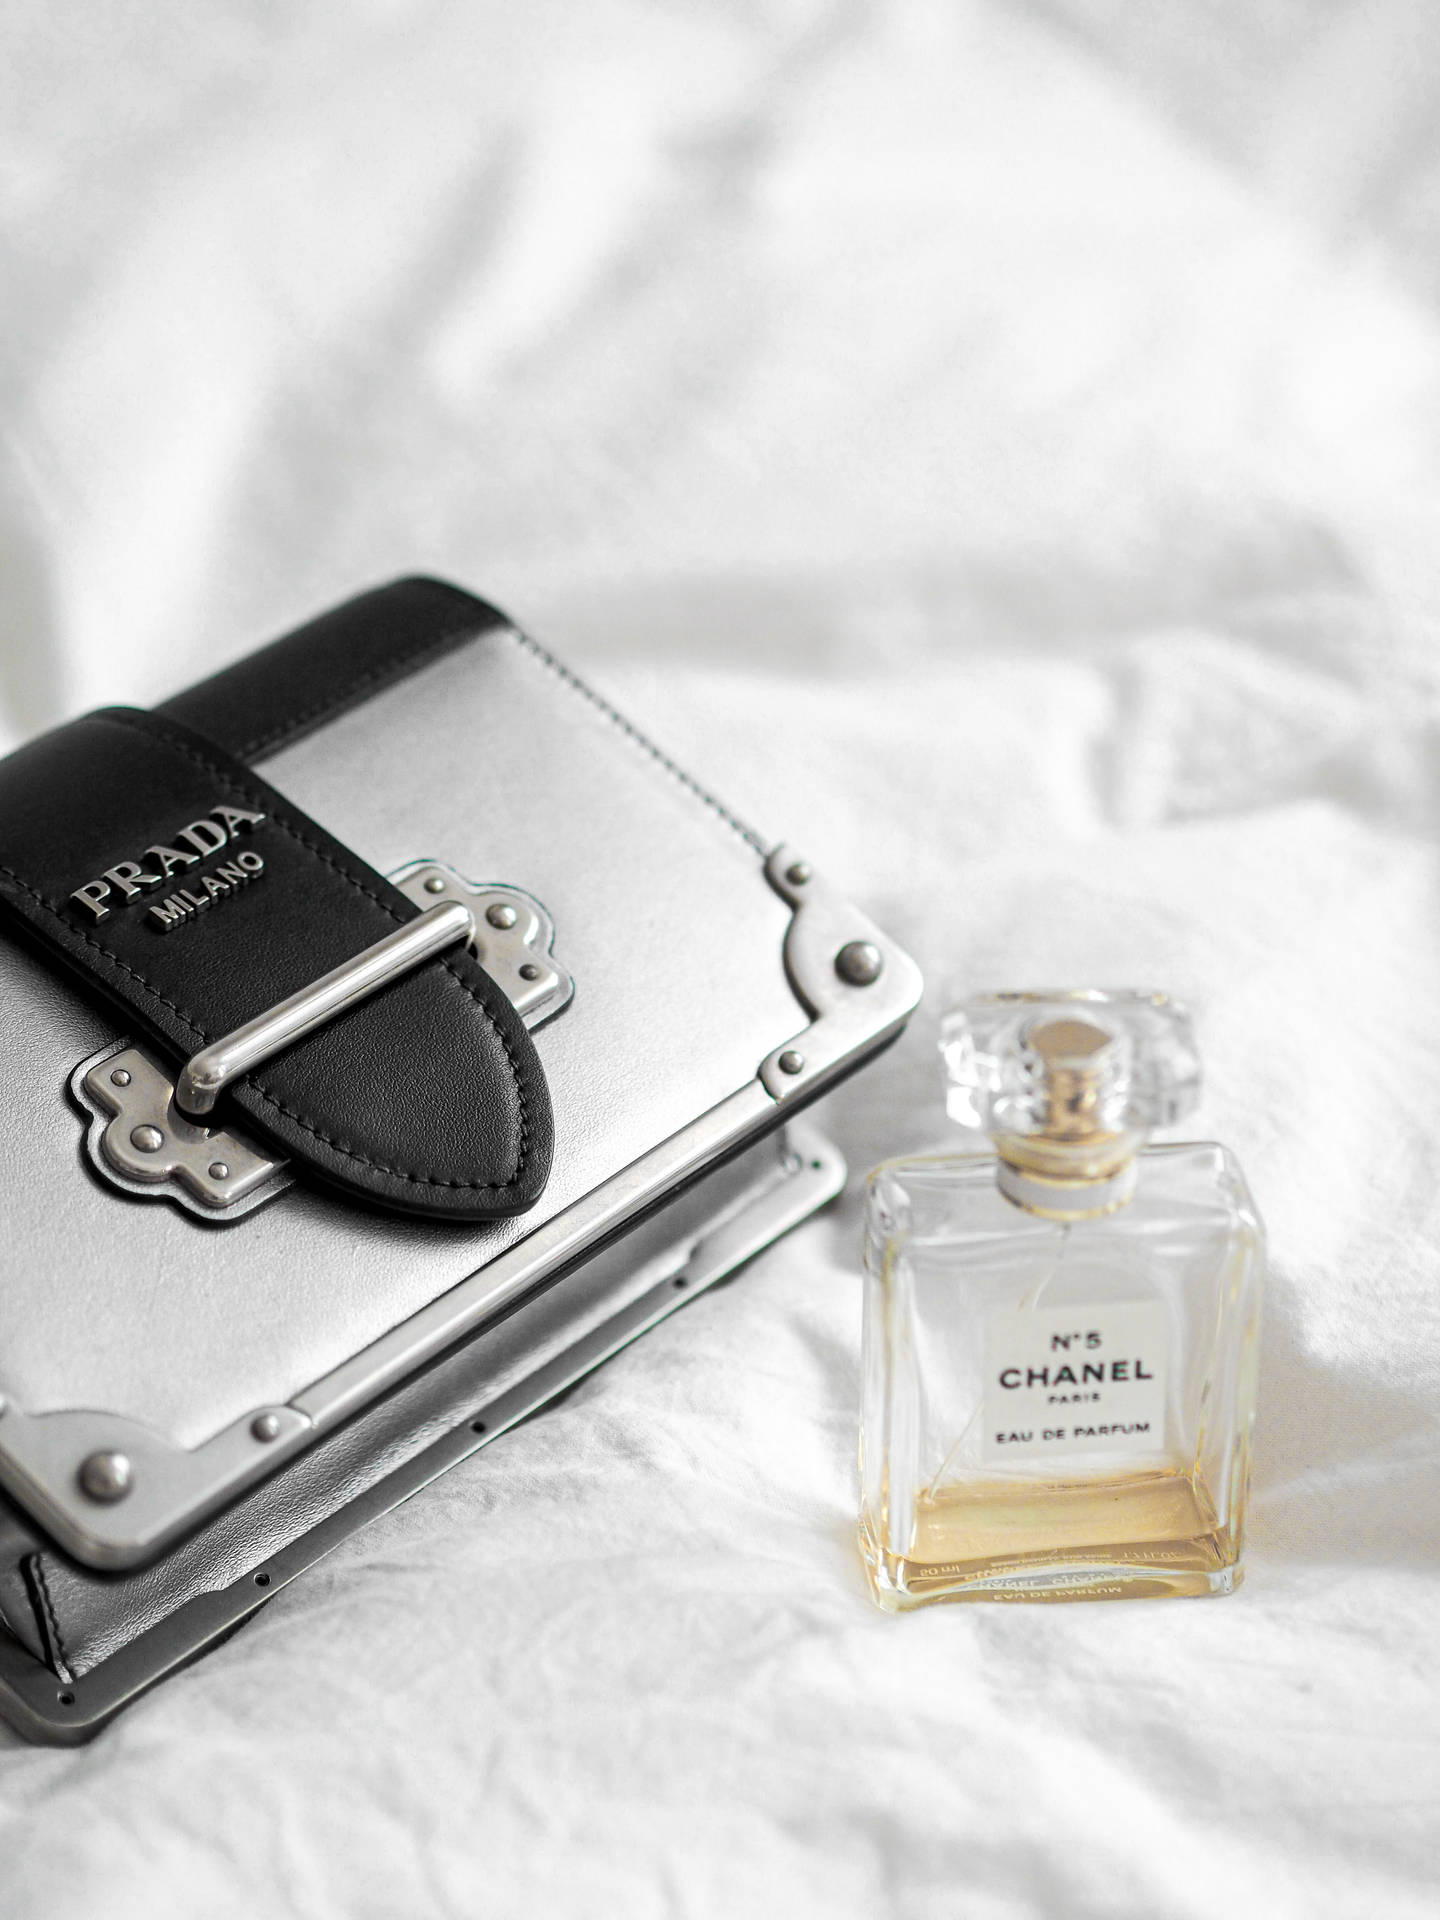 Download Prada Bag Chanel Perfume Wallpaper